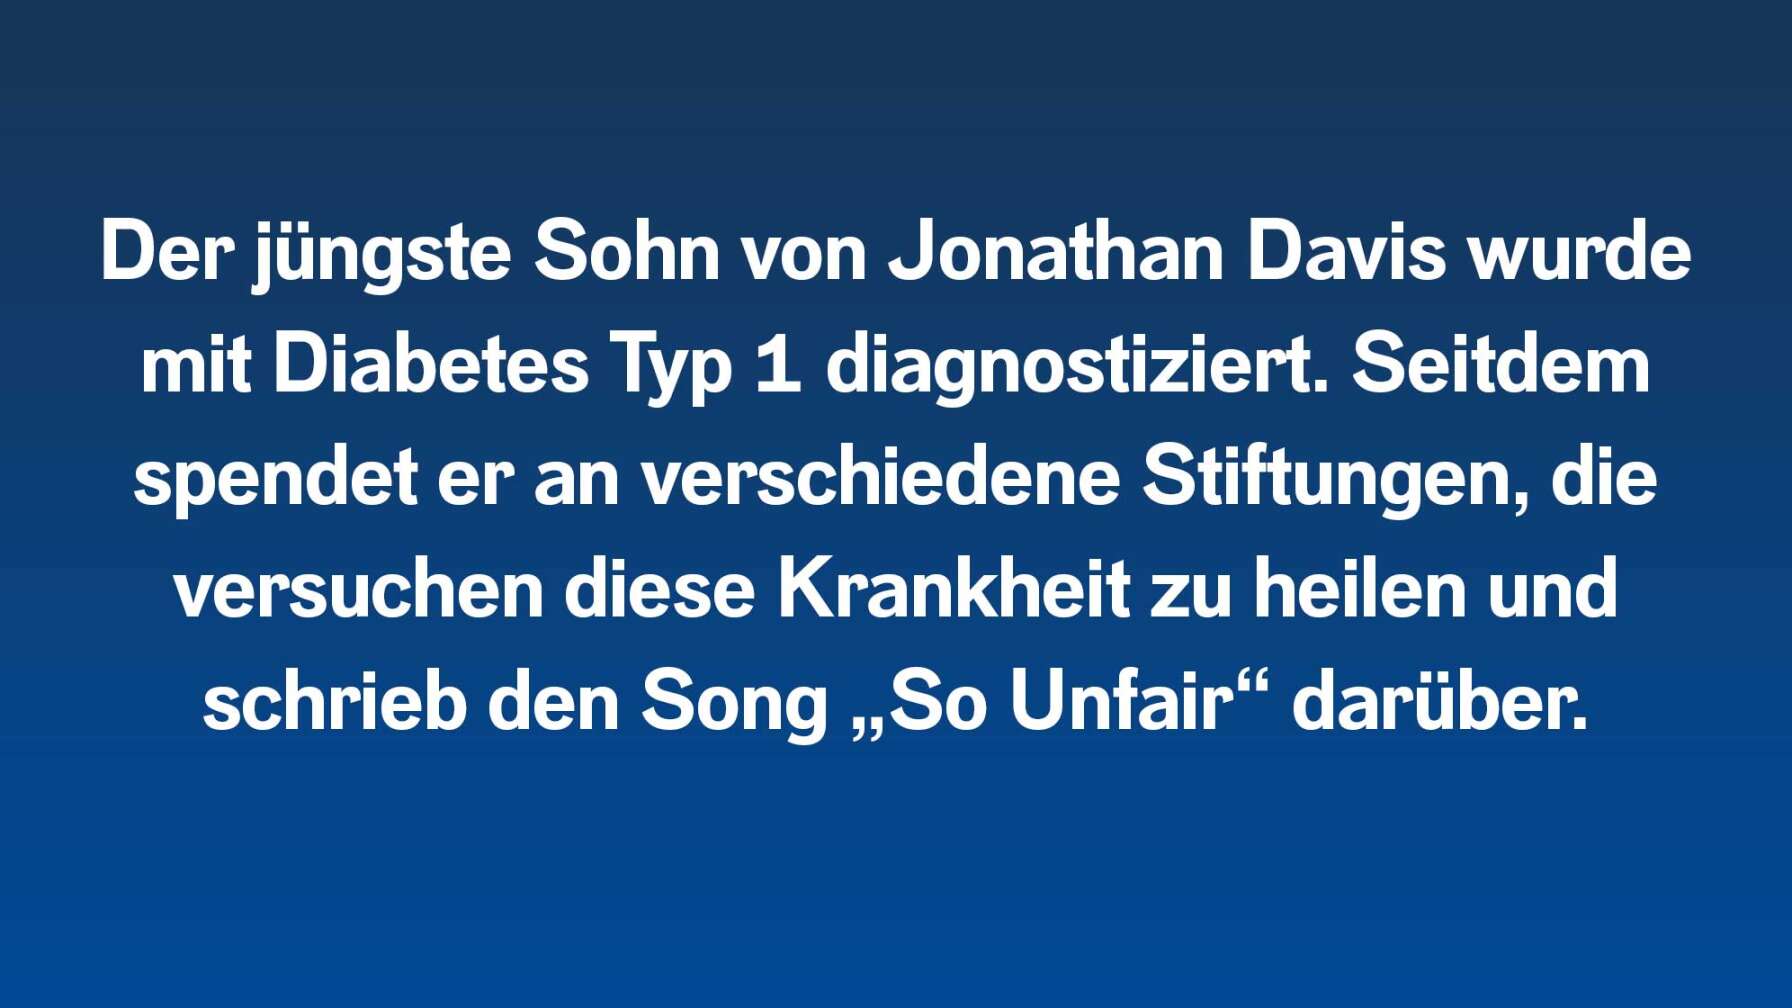 Der jüngste Sohn von Jonathan Davis wurde mit Diabetes Typ 1 diagnostiziert. Seitdem spendet er an verschiedene Stiftungen, die versuchen diese Krankheit zu heilen und schrieb den Song „So Unfair“ darüber.